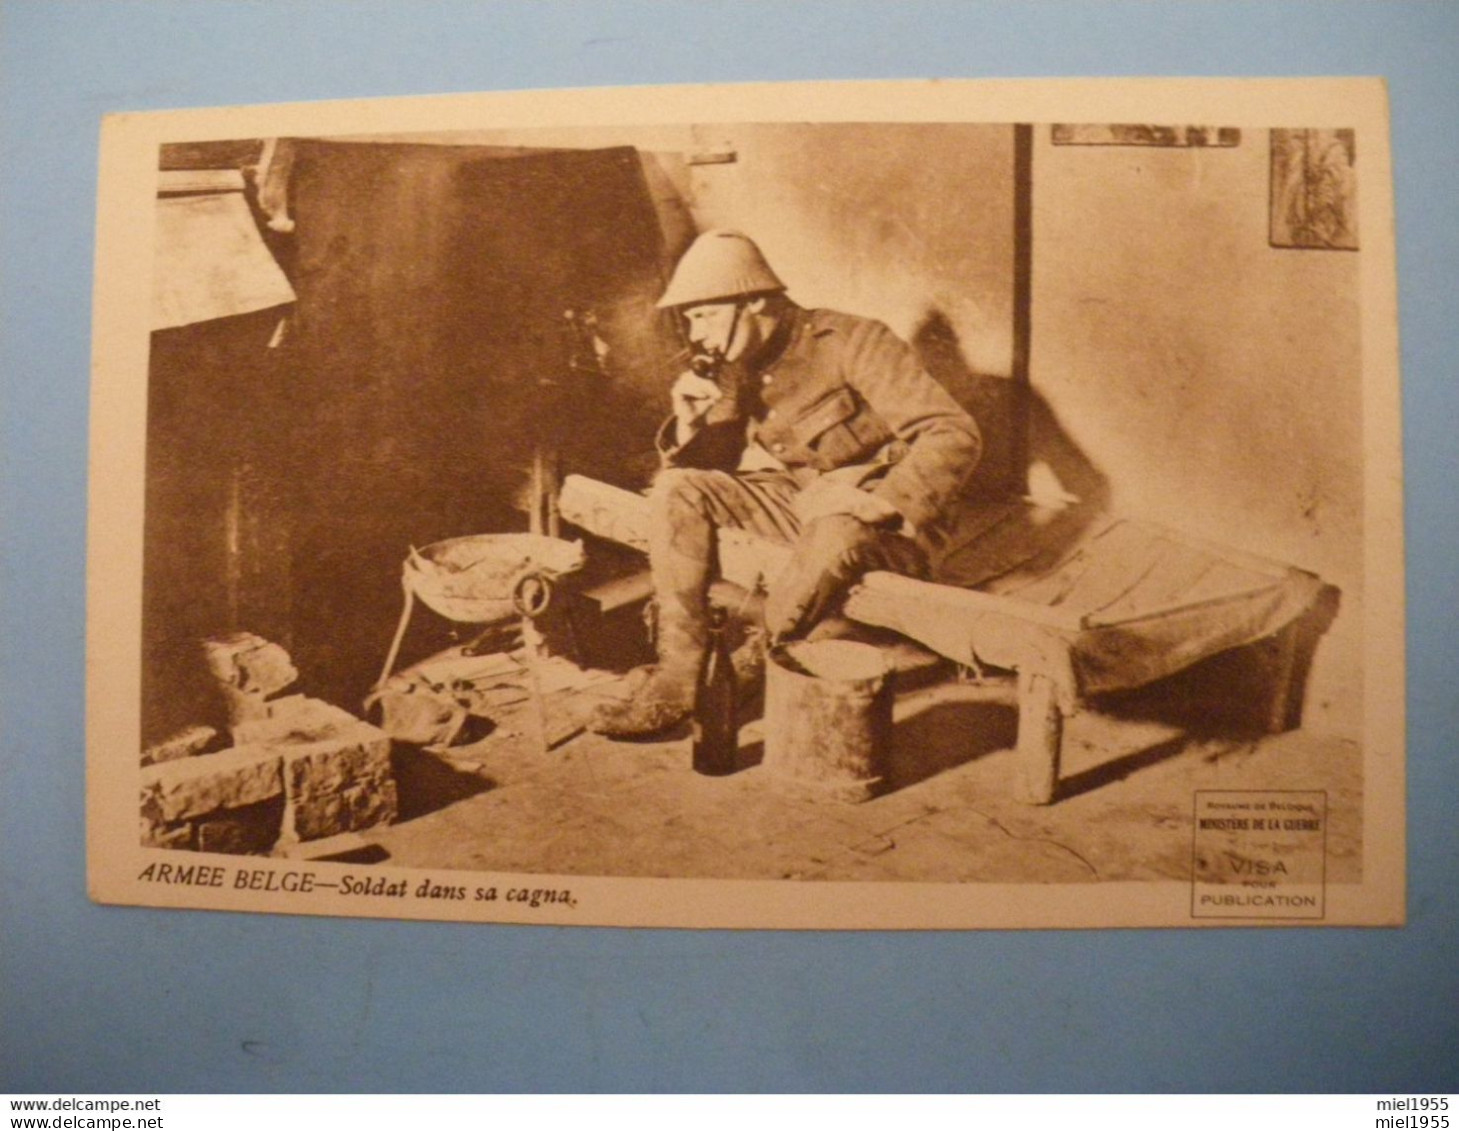 WW1 Armée Belge Soldat Dans Sa Cagna Emile VANDERVELDE (6 Photos) - Weltkrieg 1914-18